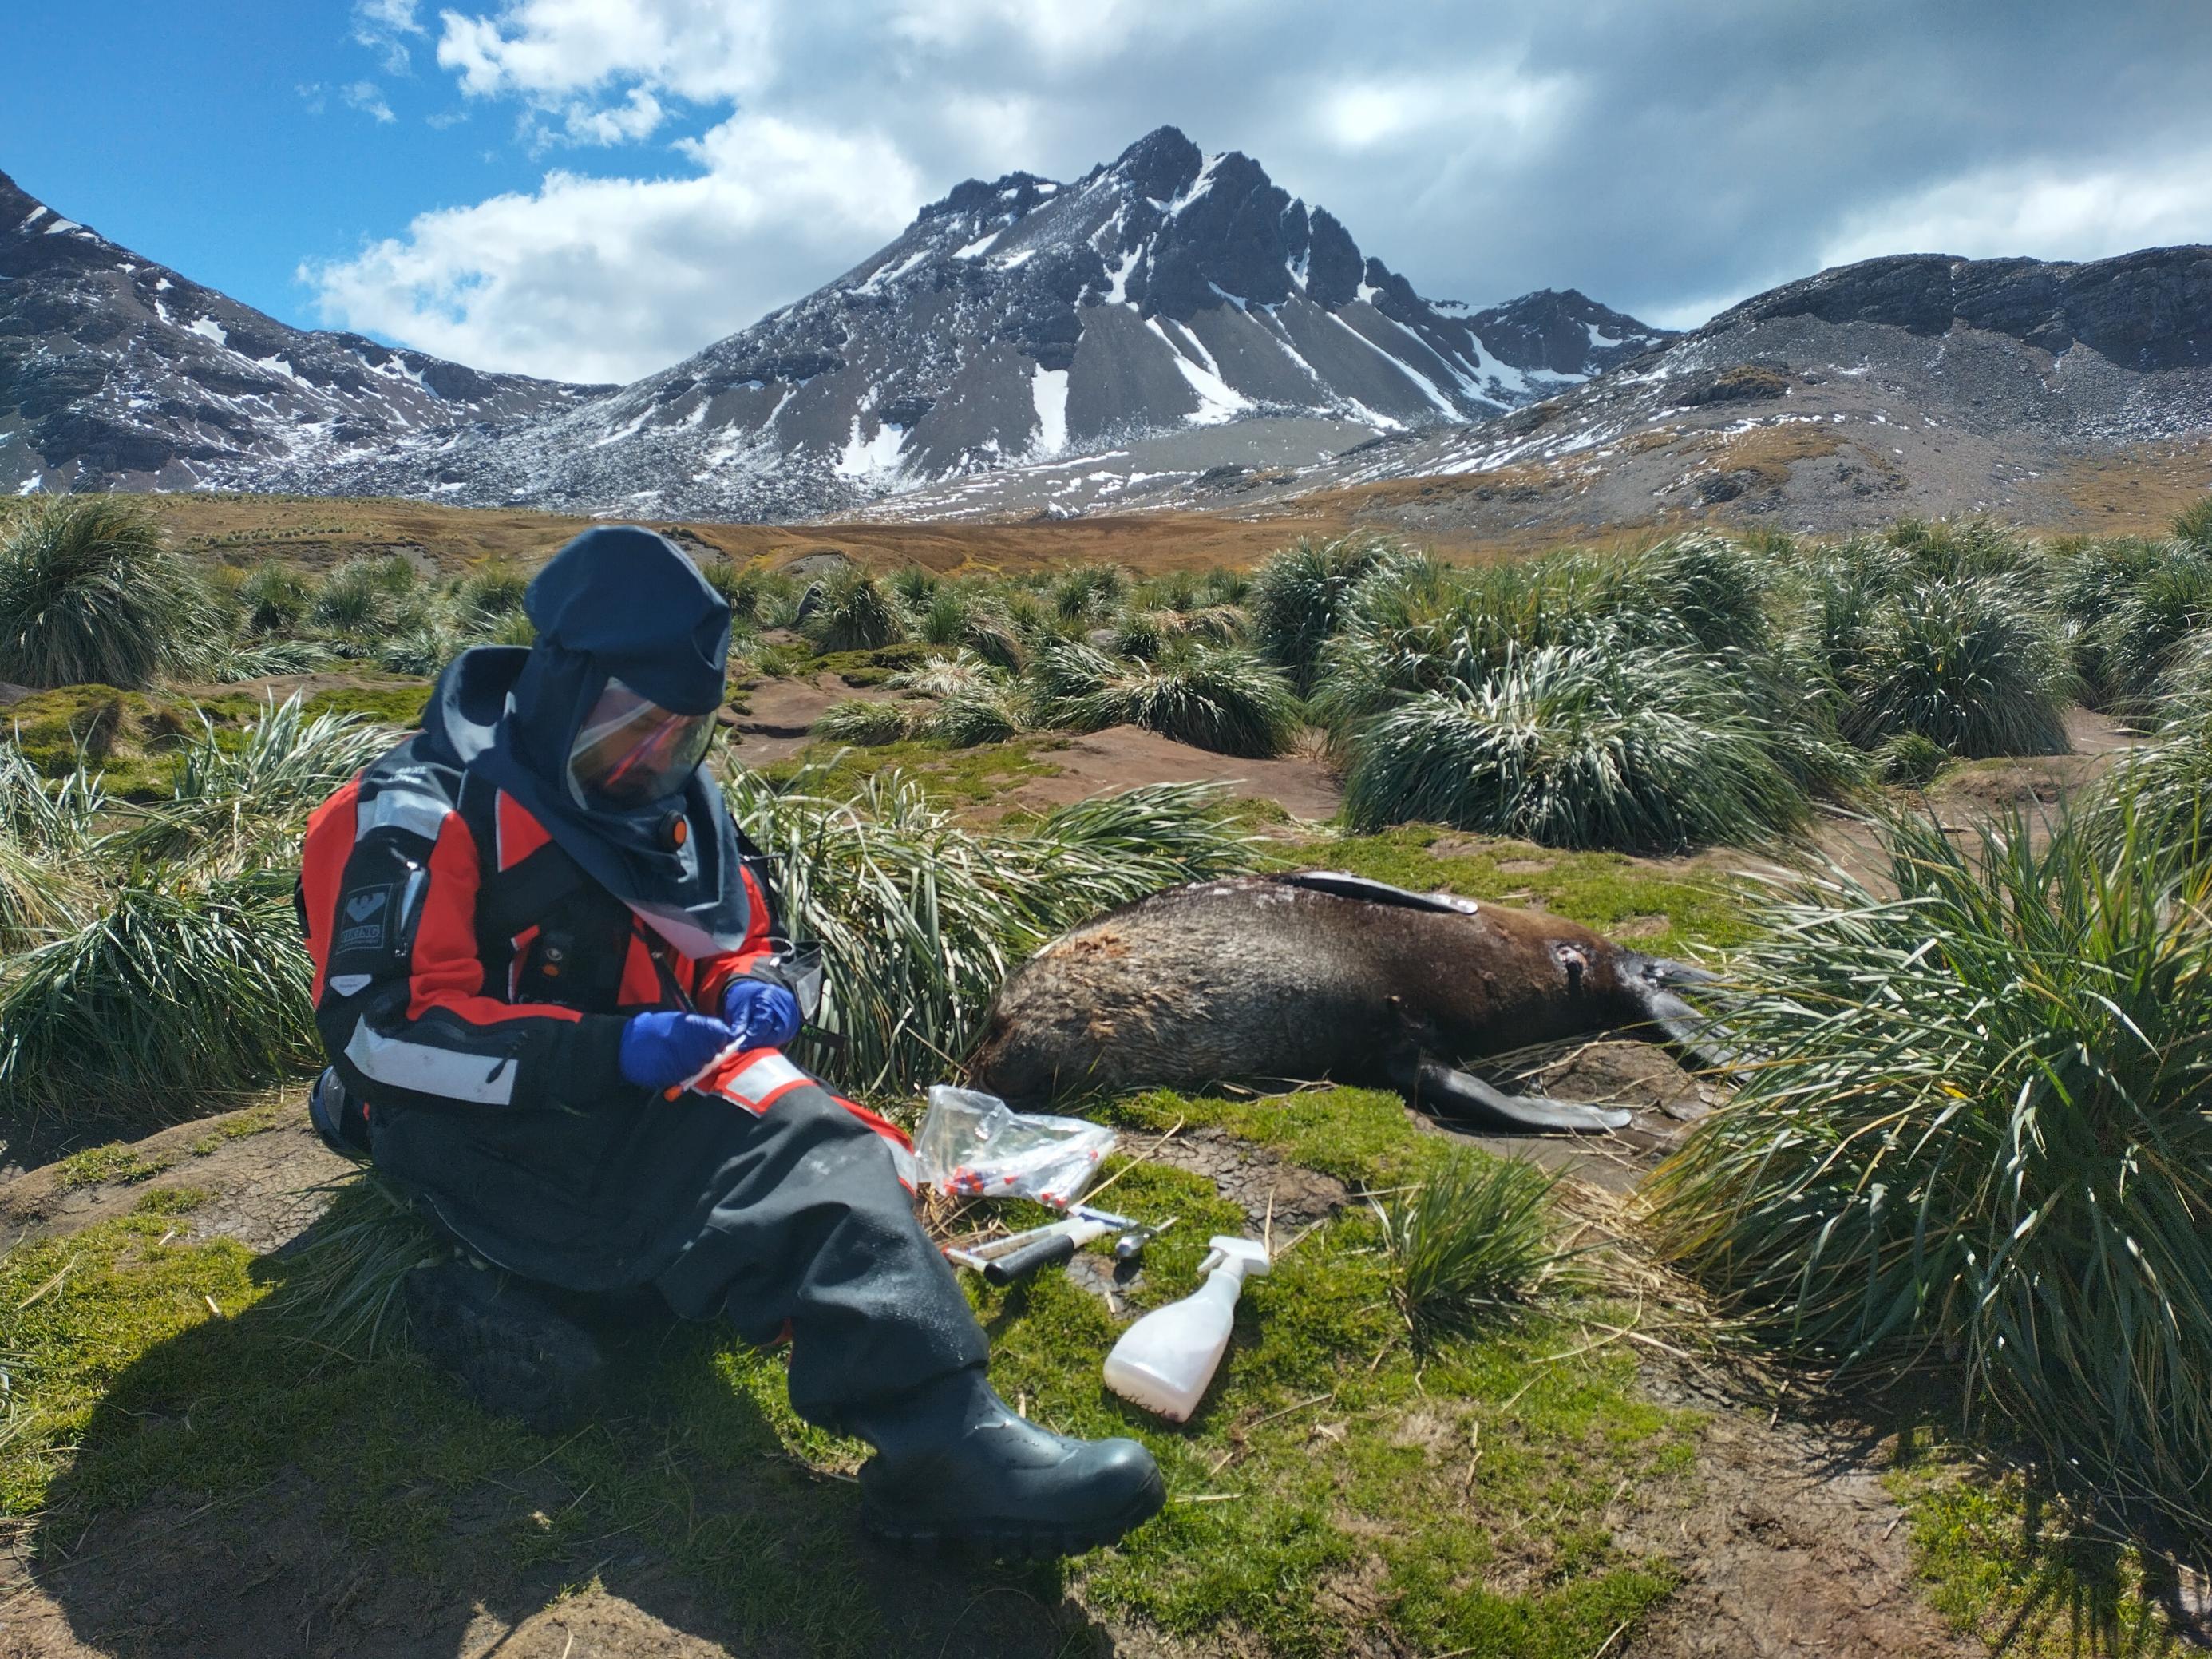 Ein Wissenschaftler in Schutzanzug vor einer toten Robbe in arktischer Umgebung